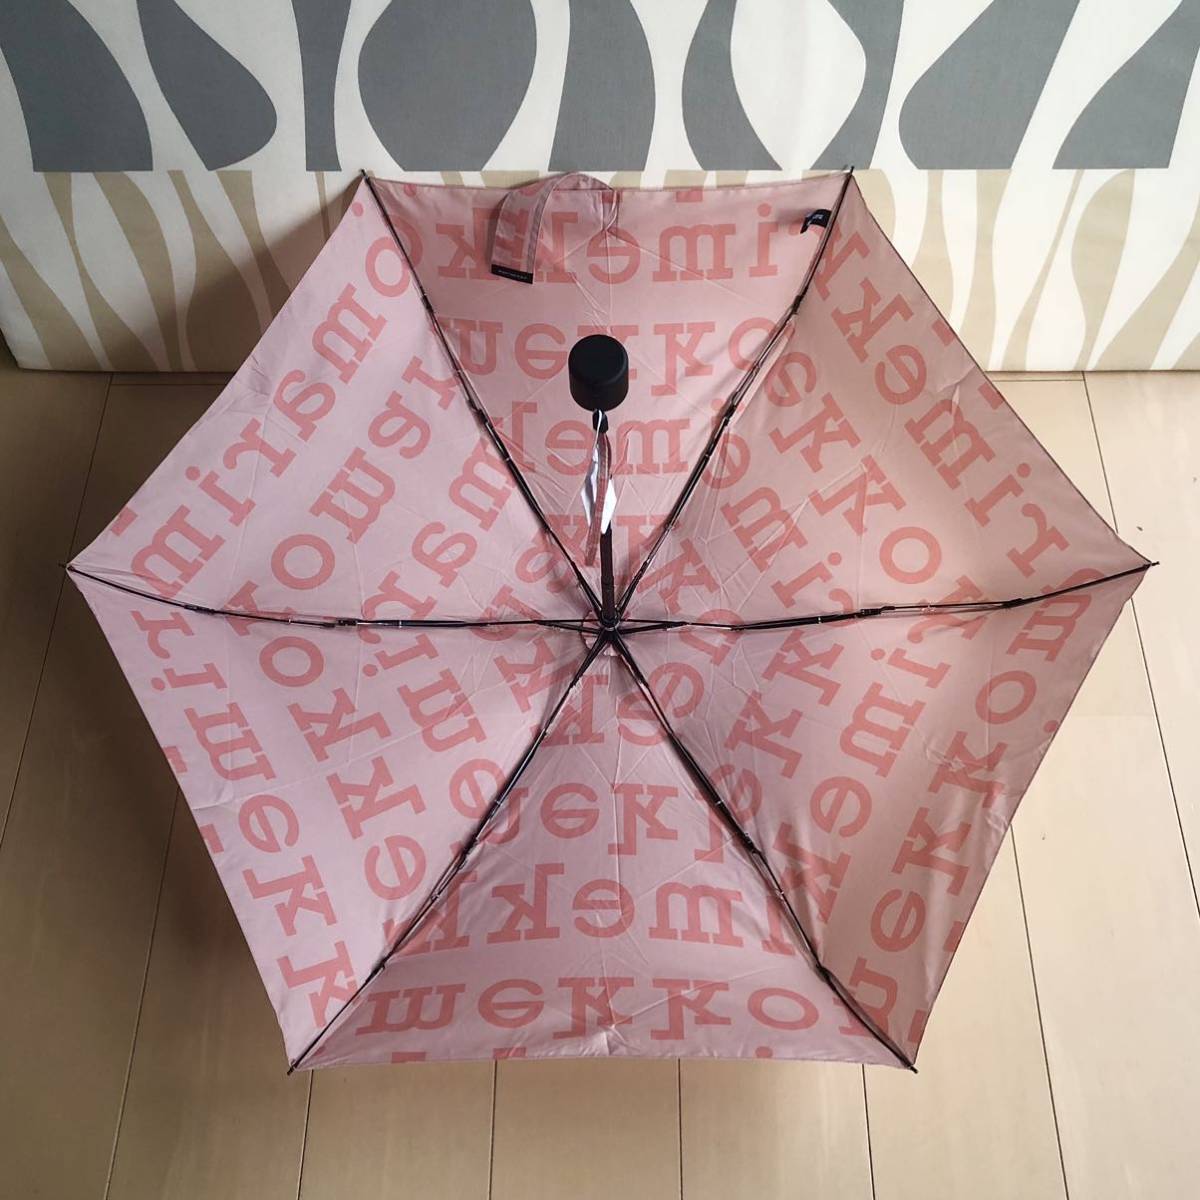  внутренний стандартный товар новый товар marimekko Marimekko складной зонт MARILOGO MINI MANUAL JAPAN EXCLUSIVE розовый Япония ограничение 